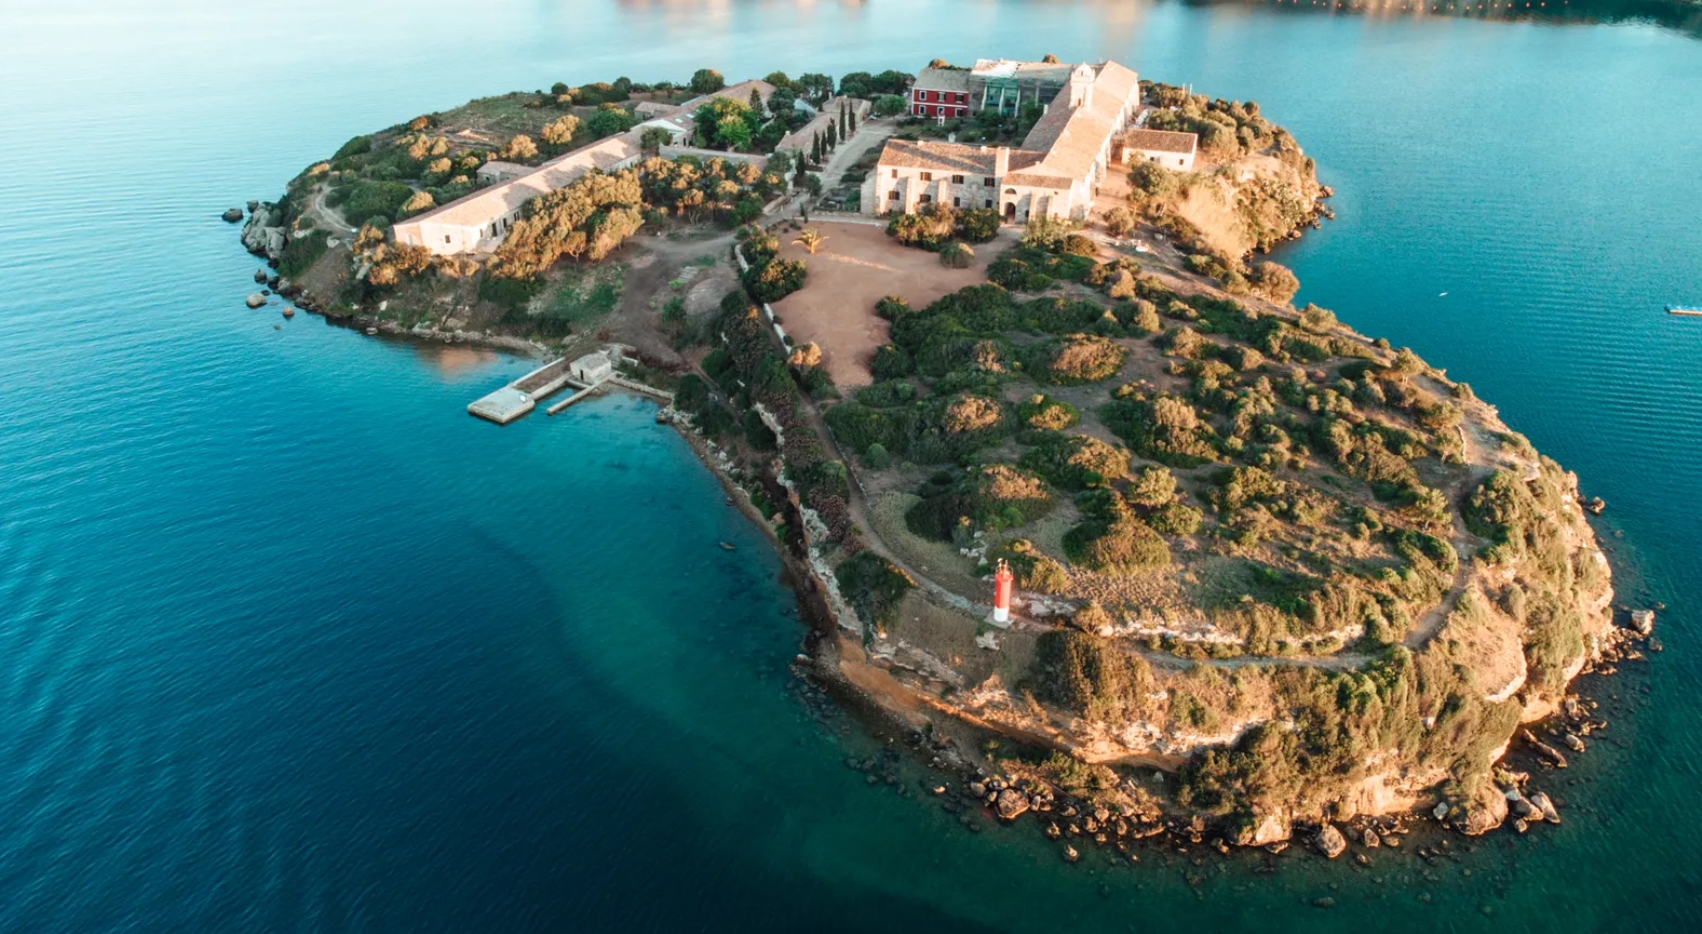 Viaje al Arte en Menorca y el compromiso con la comunidad. Lugares de ensueño invitan a perderse en la fantasía.